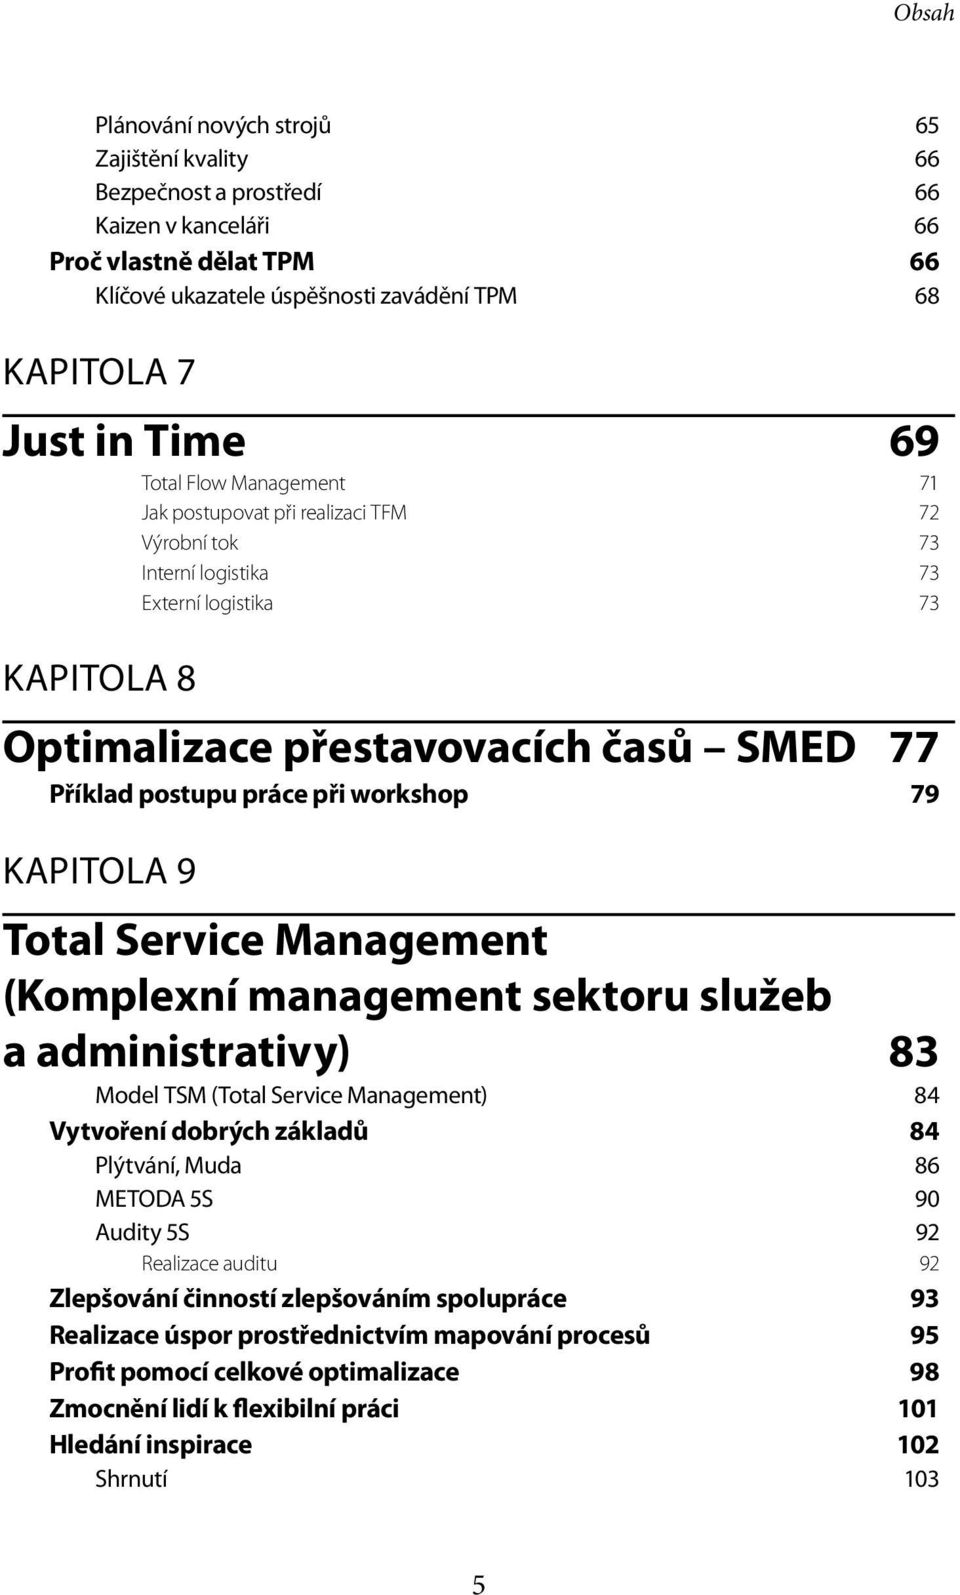 workshop 79 KAPITOLA 9 Total Service Management (Komplexní management sektoru služeb a administrativy) 83 Model TSM (Total Service Management) 84 Vytvoření dobrých základů 84 Plýtvání, Muda 86 METODA